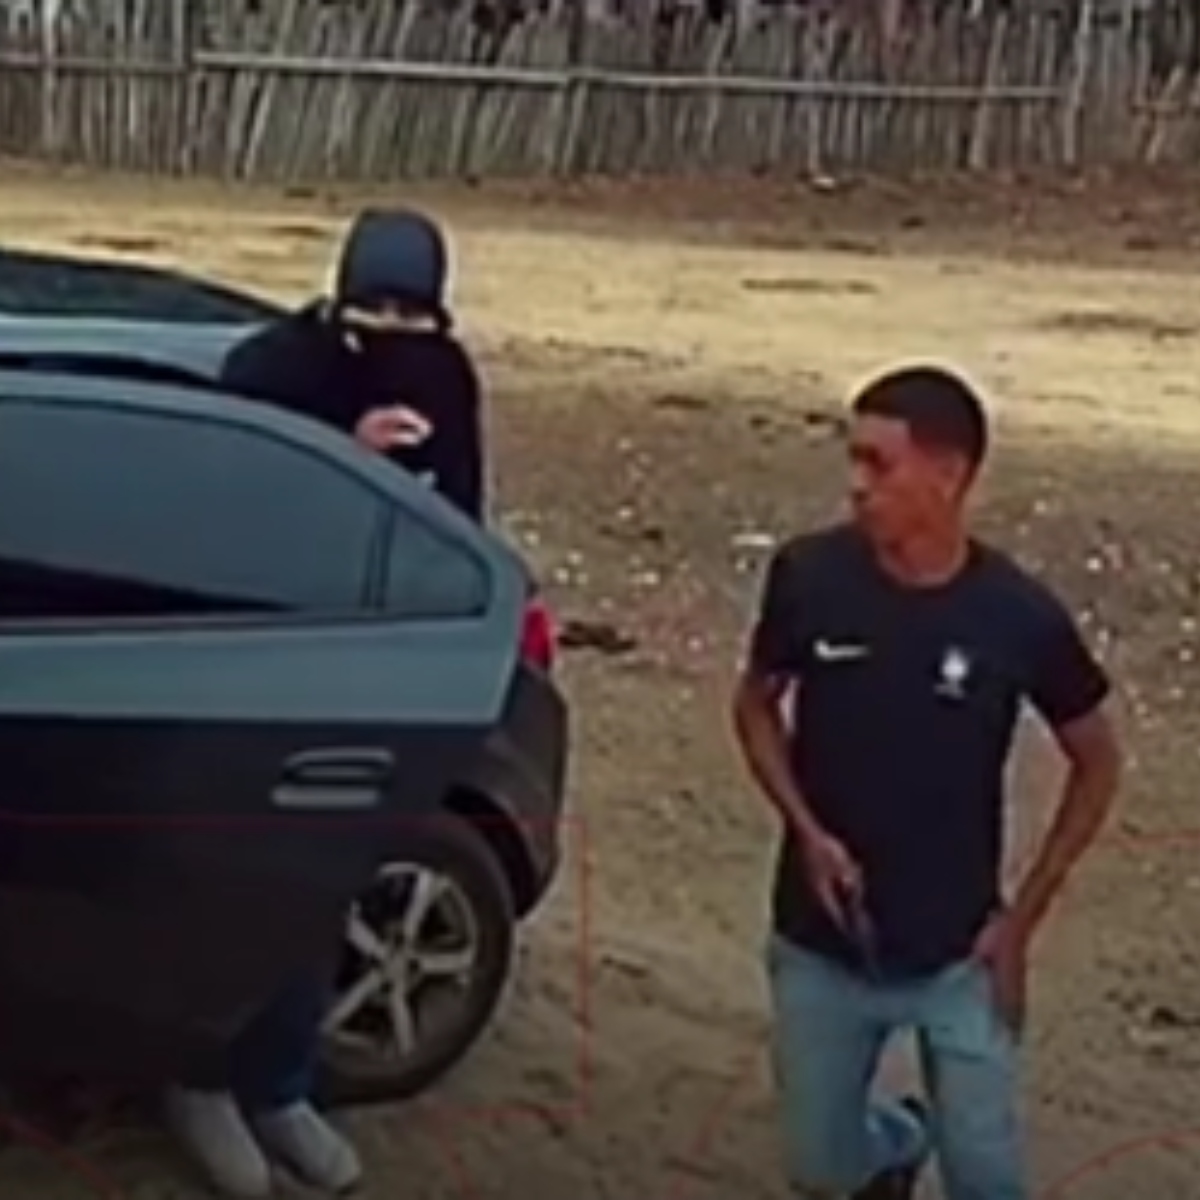  Homens saindo armados do carro 